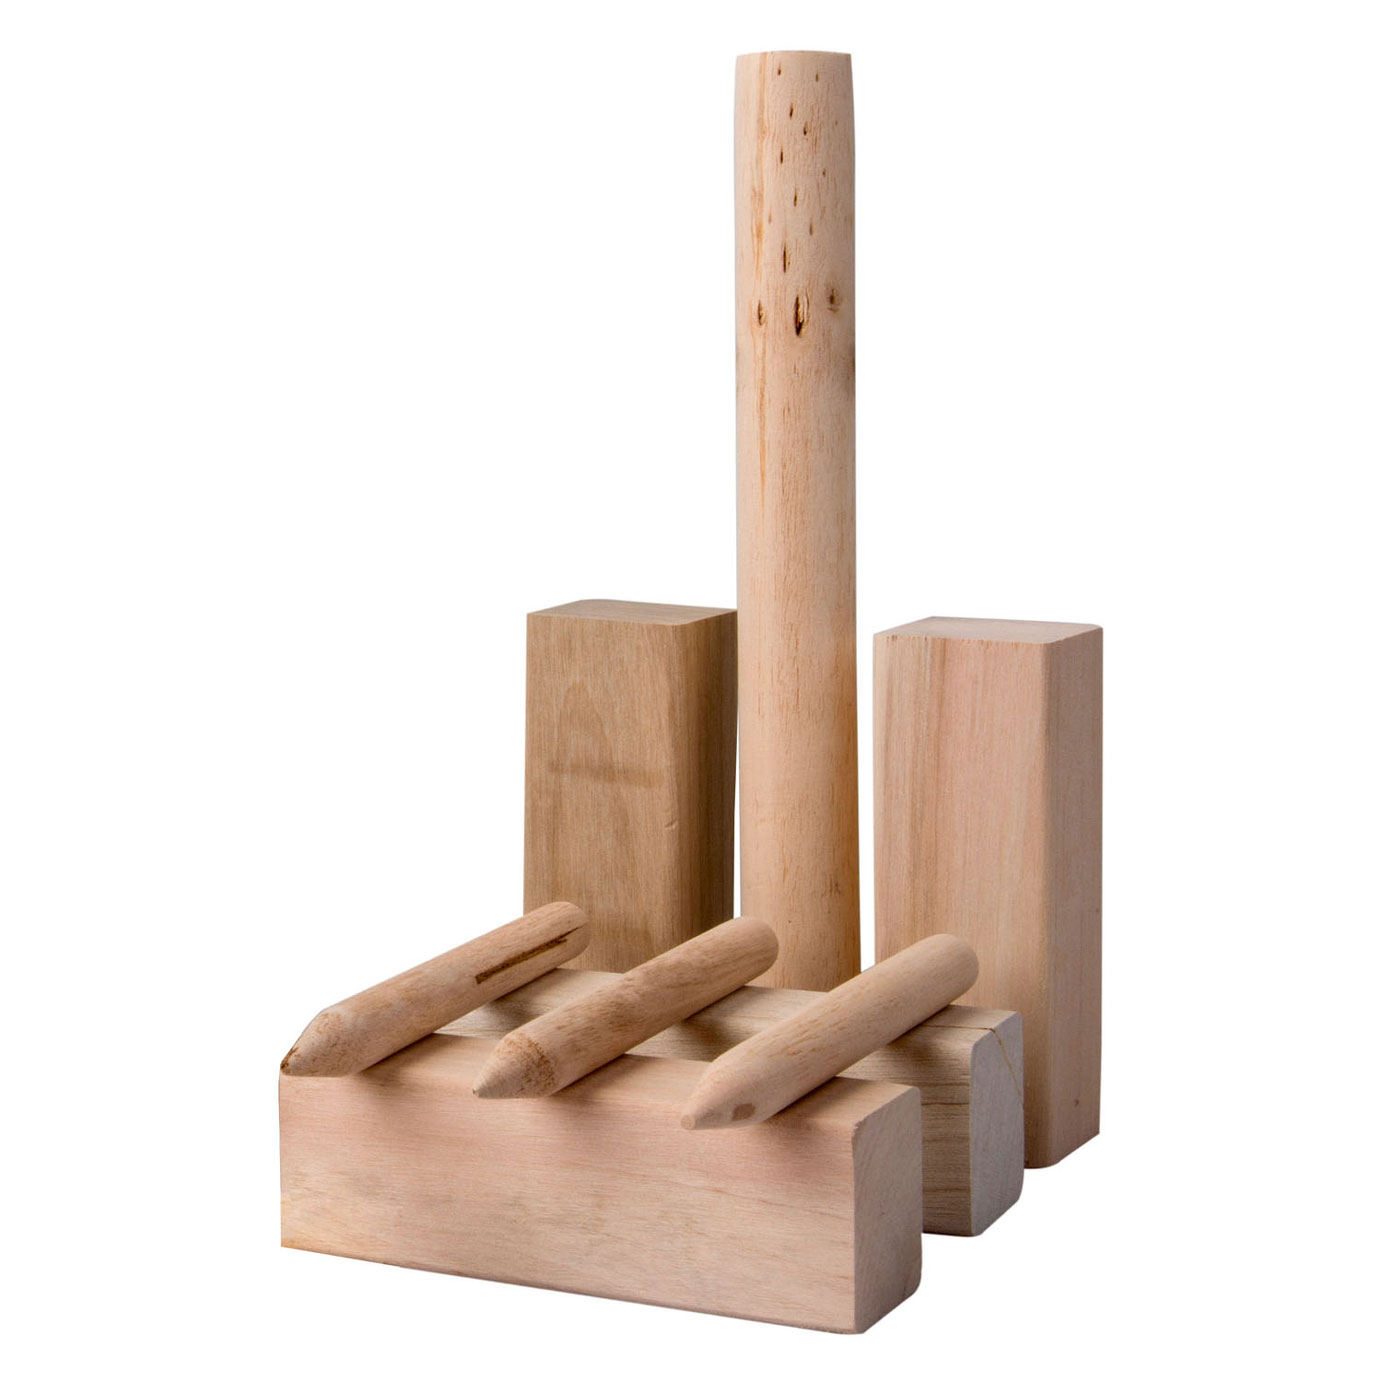 Kubb-Wurfspiel aus Holz, 21-teilig.